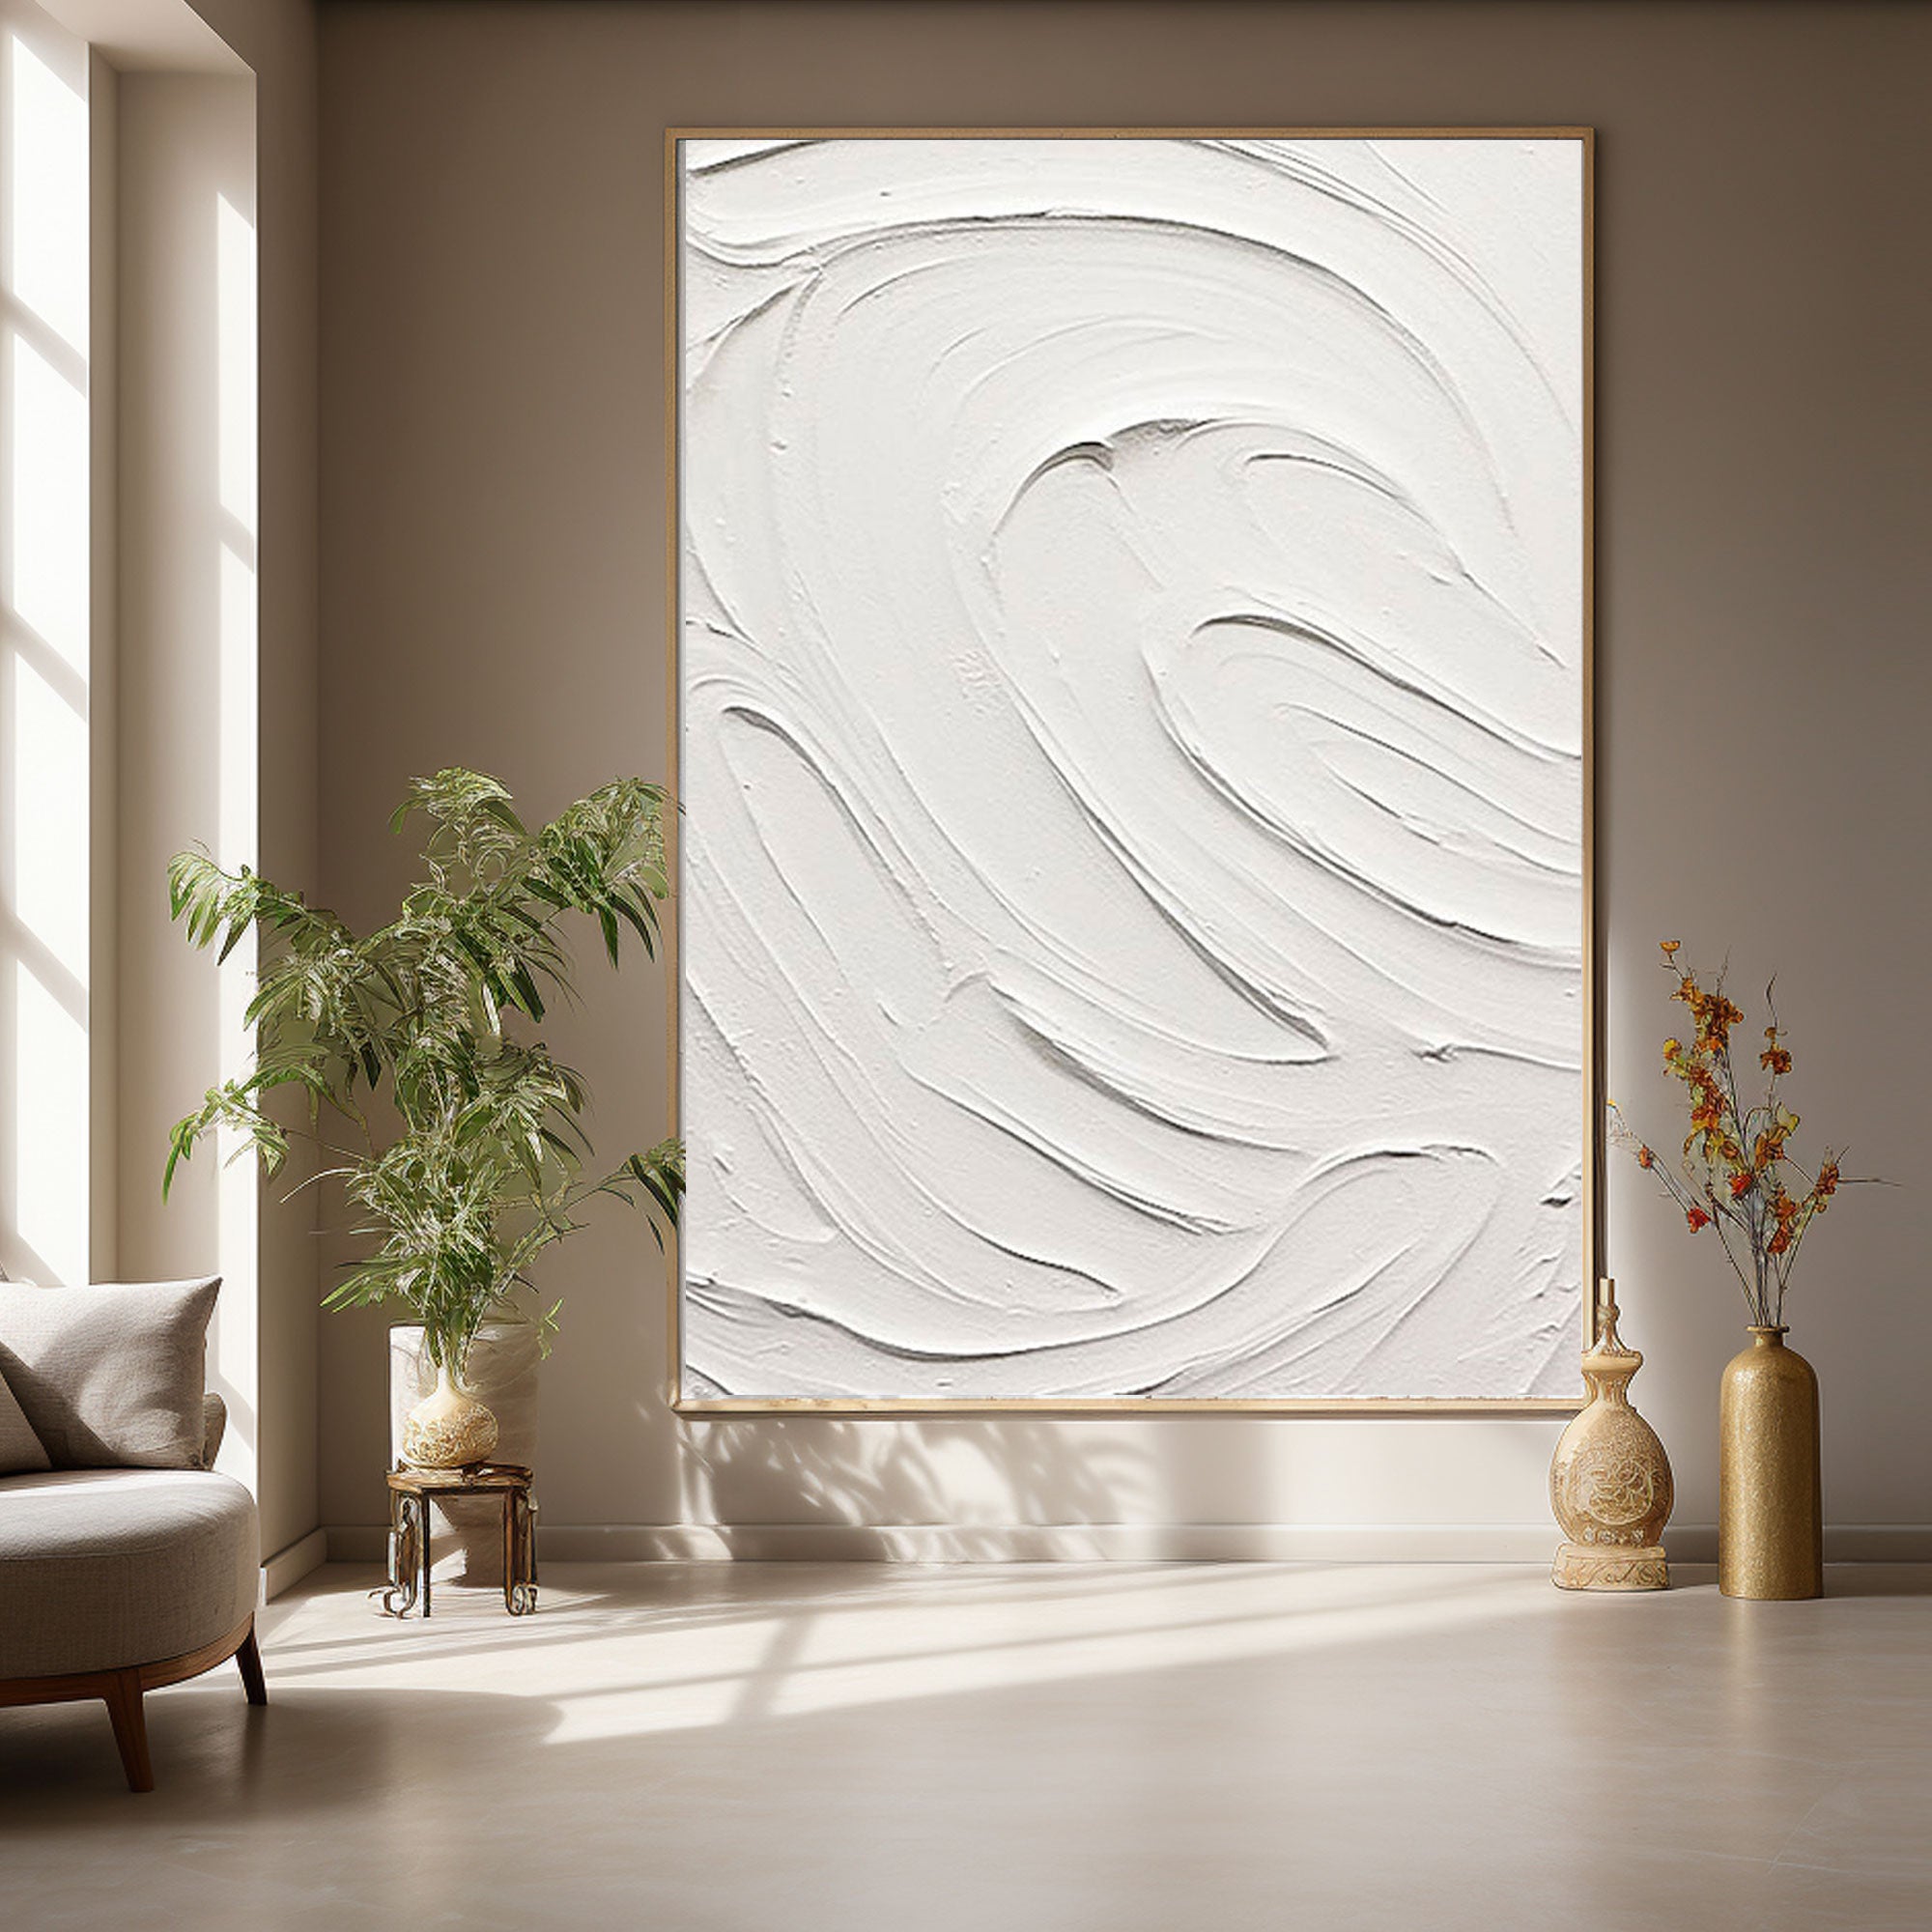 White Minimalist Painting "Eternal Whirl"